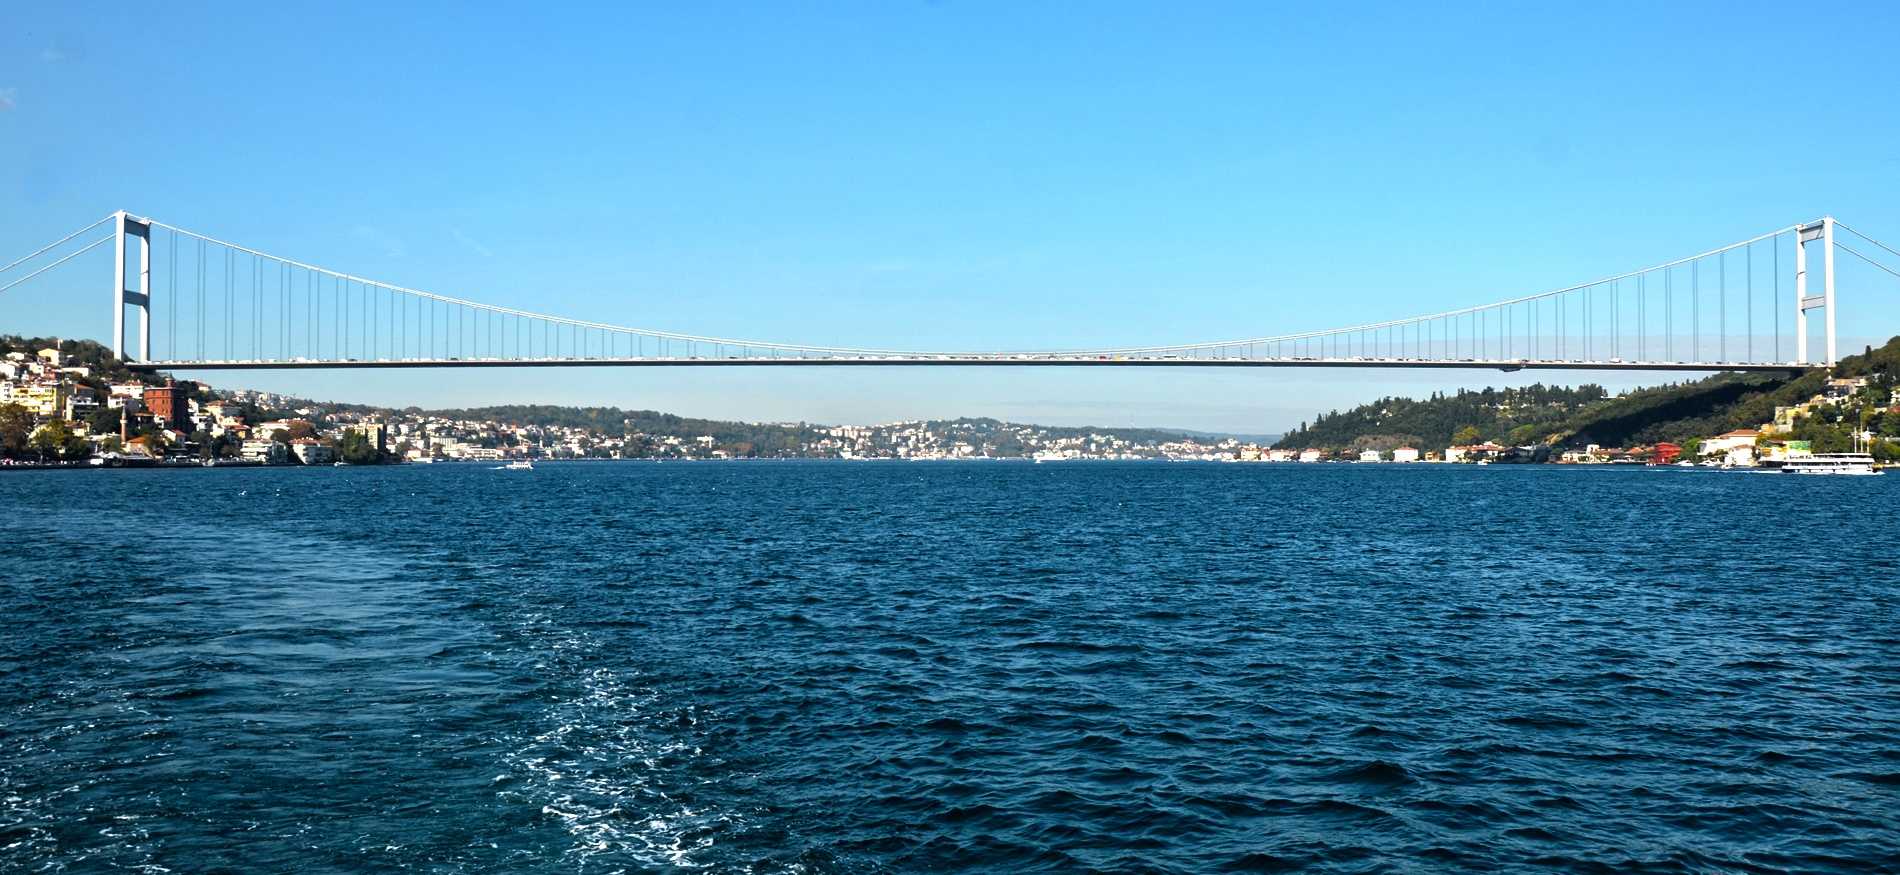 Мосты стамбула: фото и описание галатского моста, открытие нового третьего моста через босфор, его длина, а также история становления других мостов столицы